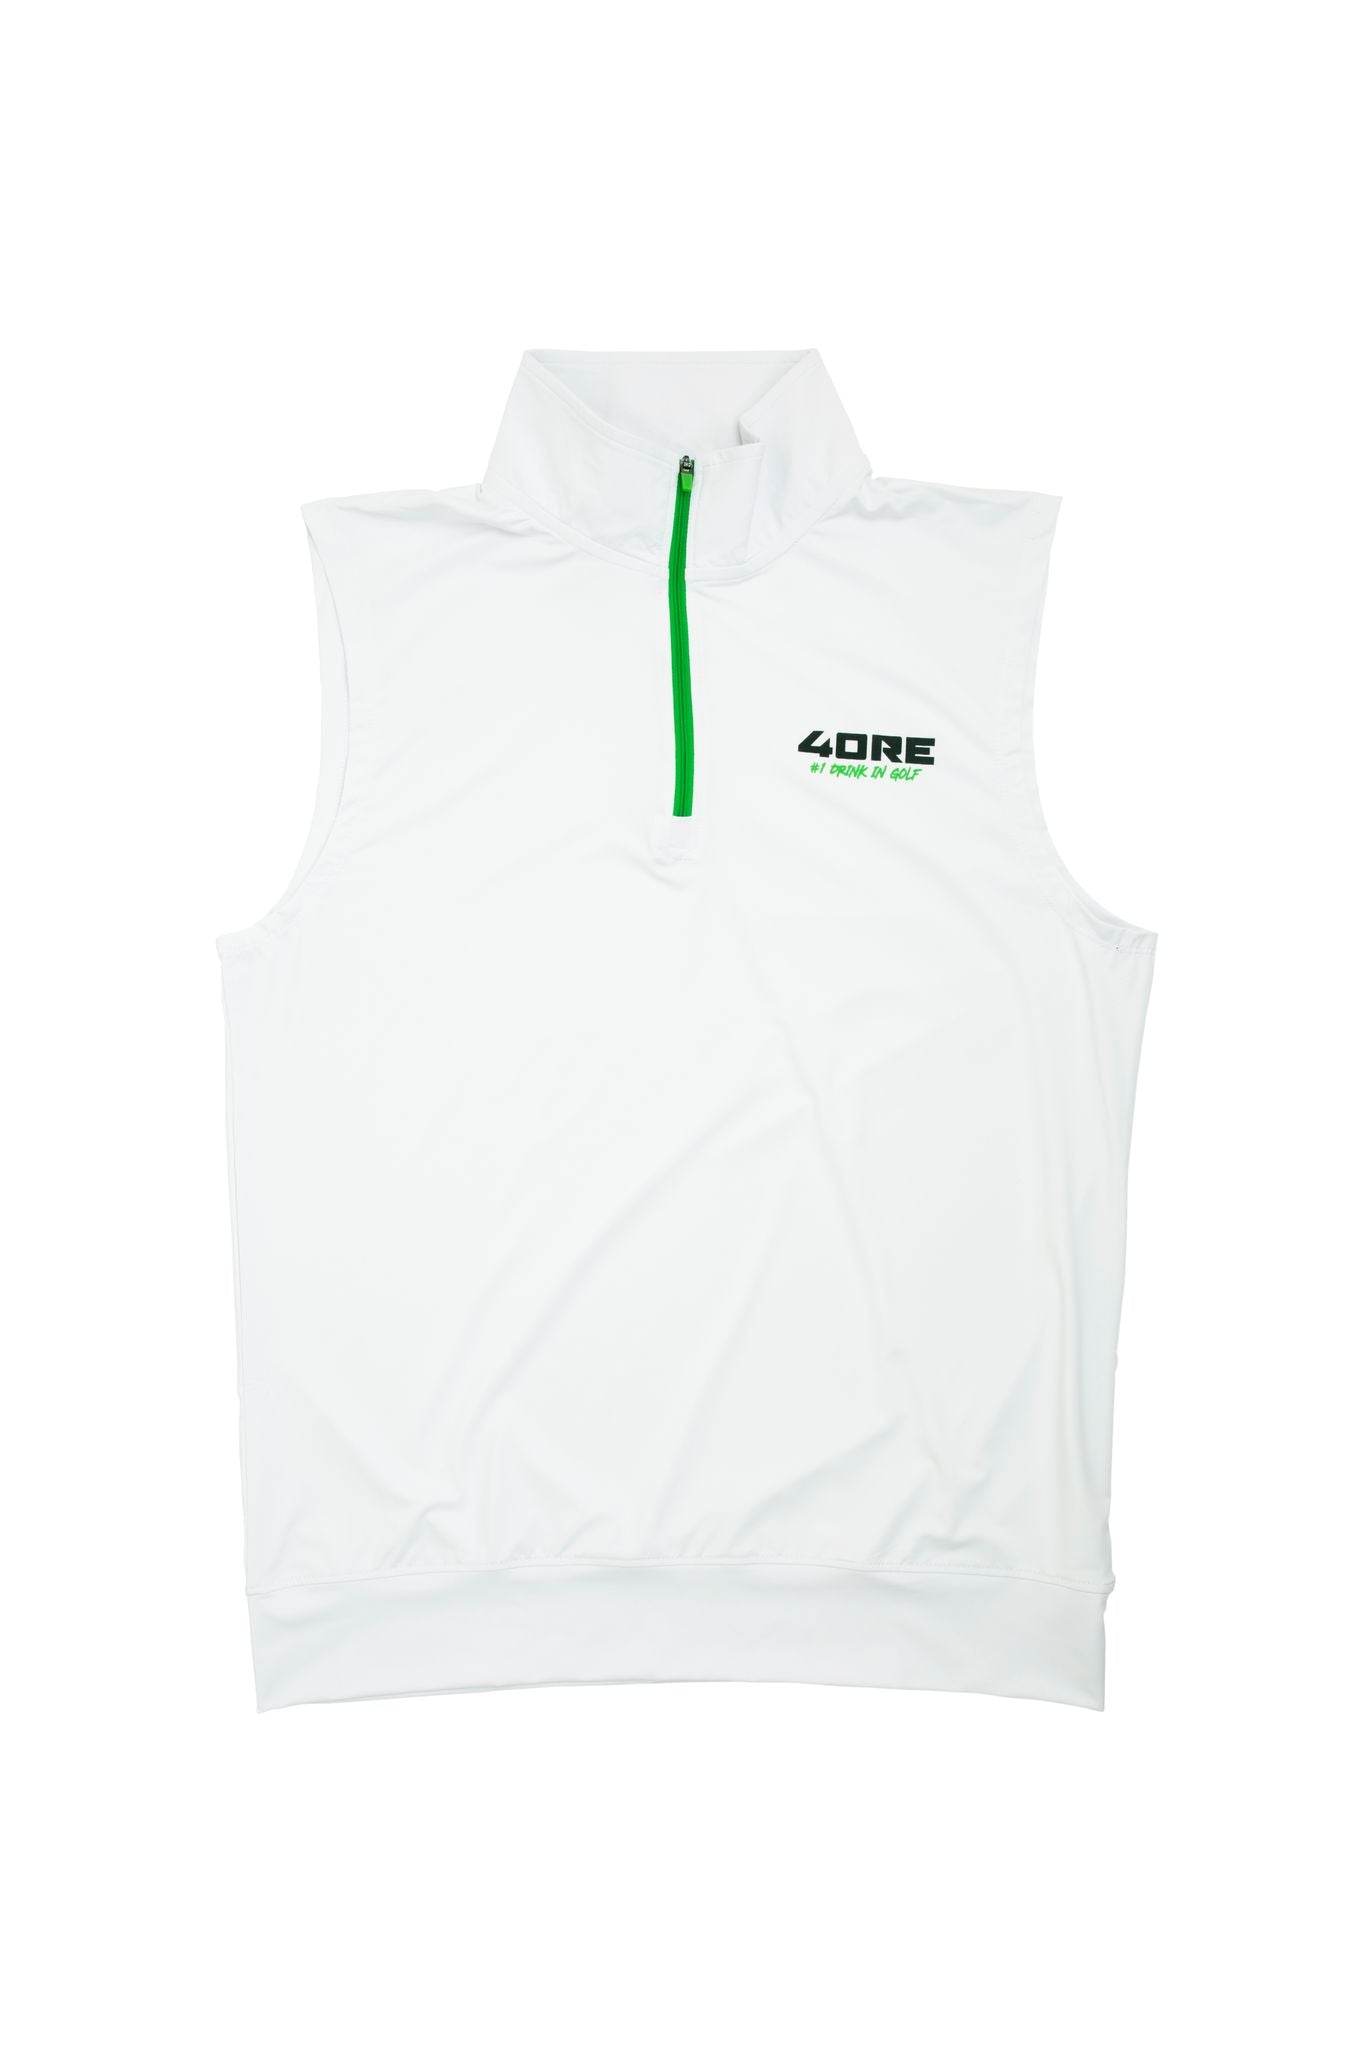 4ORE Golf Vest [White w/ Green Zipper] - 4ORE NUTRITION 4ORE Golf Vest [White w/ Green Zipper] Small Apparel & Accessories (7775826739455)